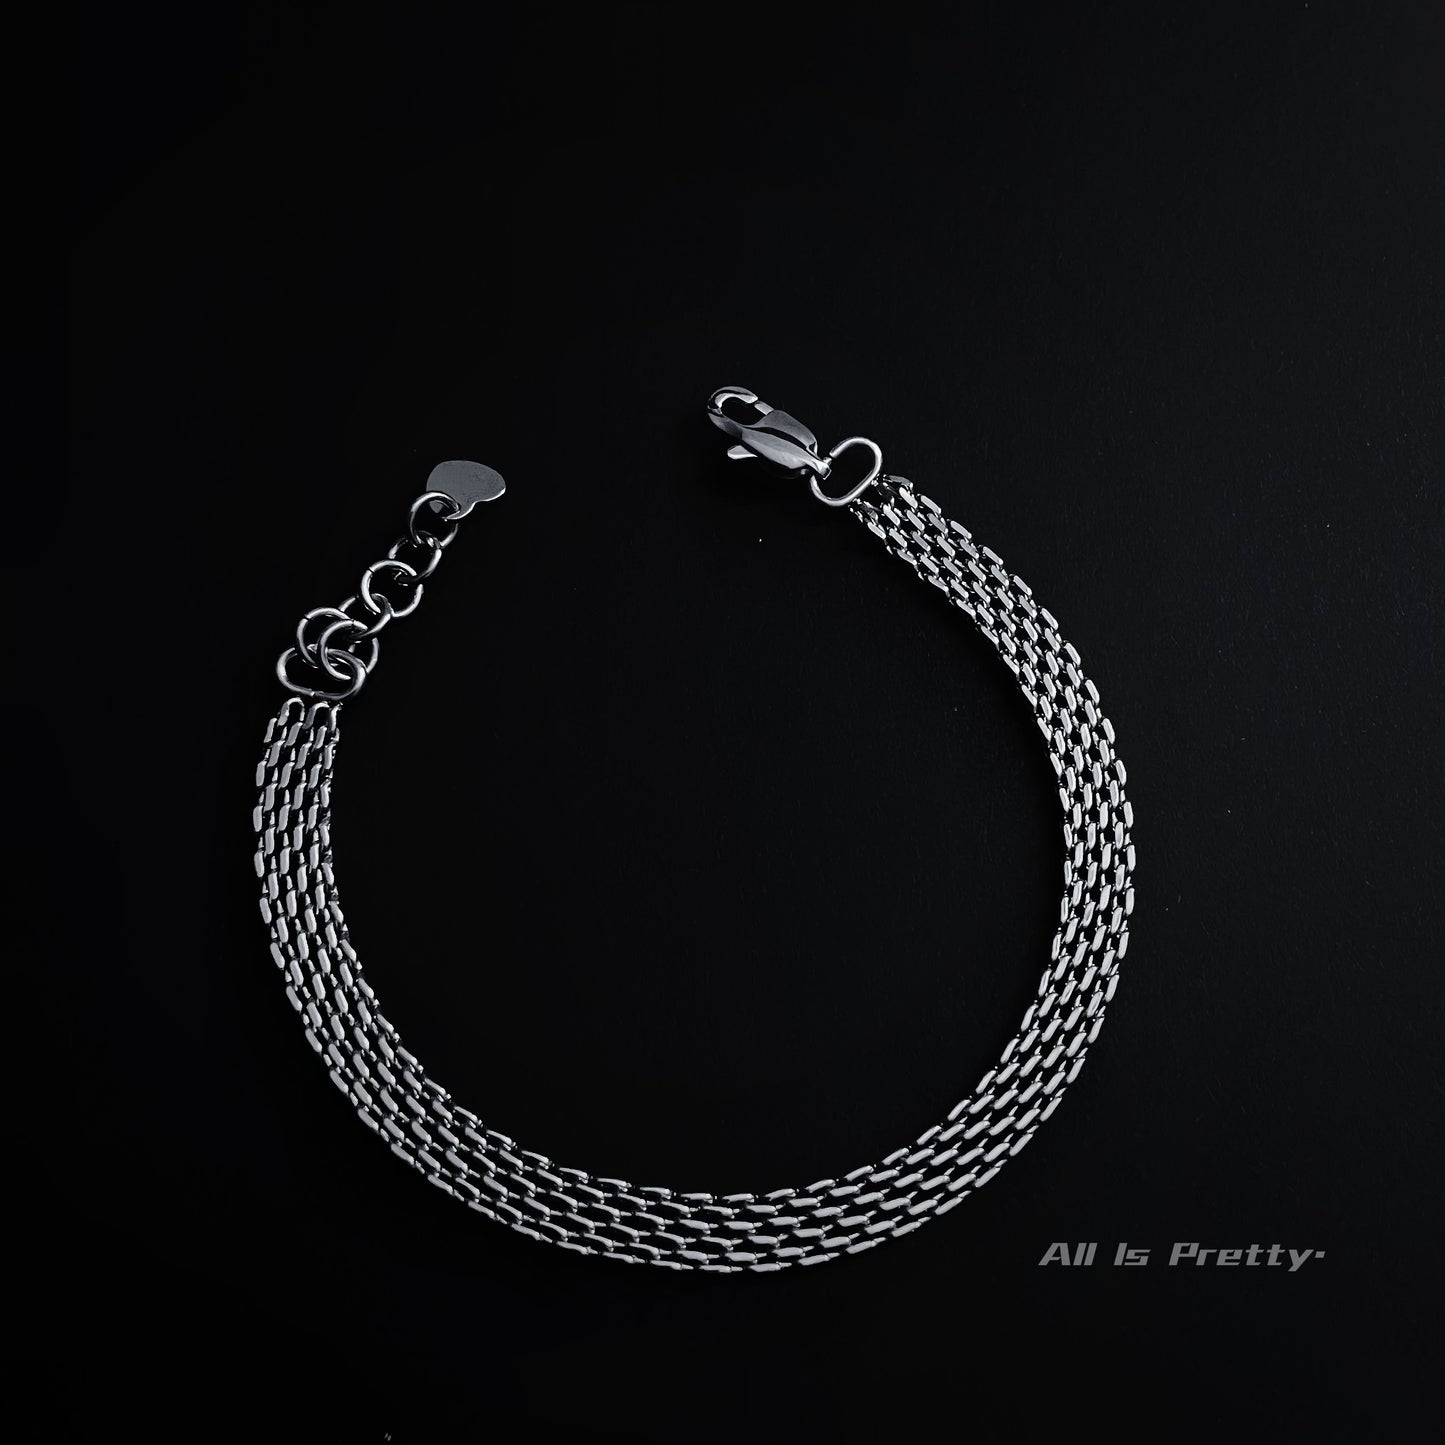 Linked herringbone chain bracelet